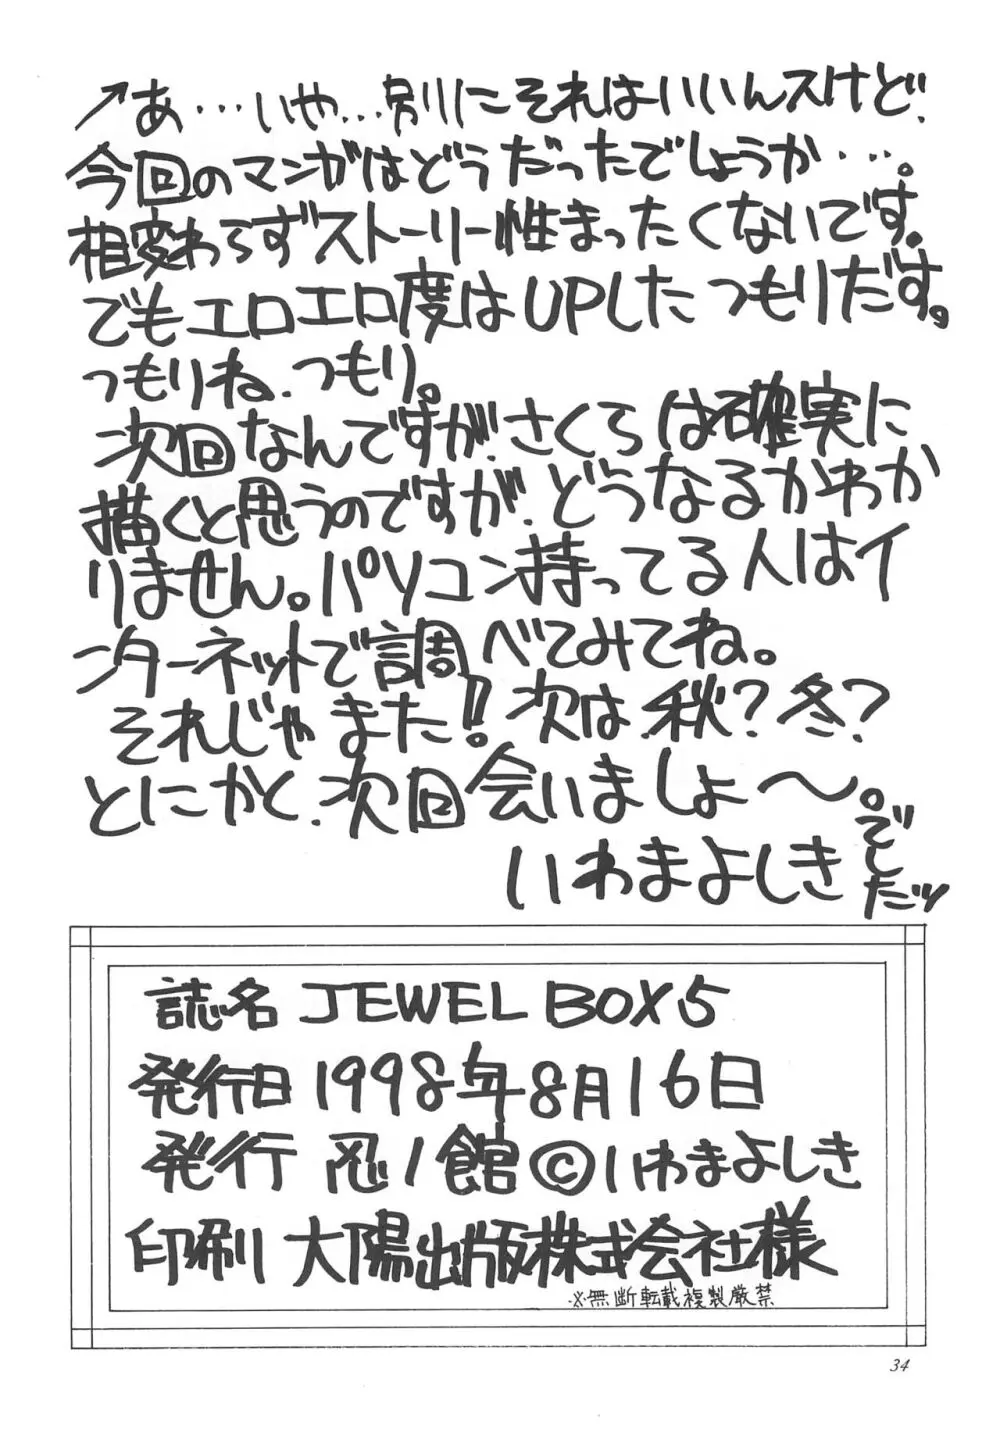 JEWEL BOX 5